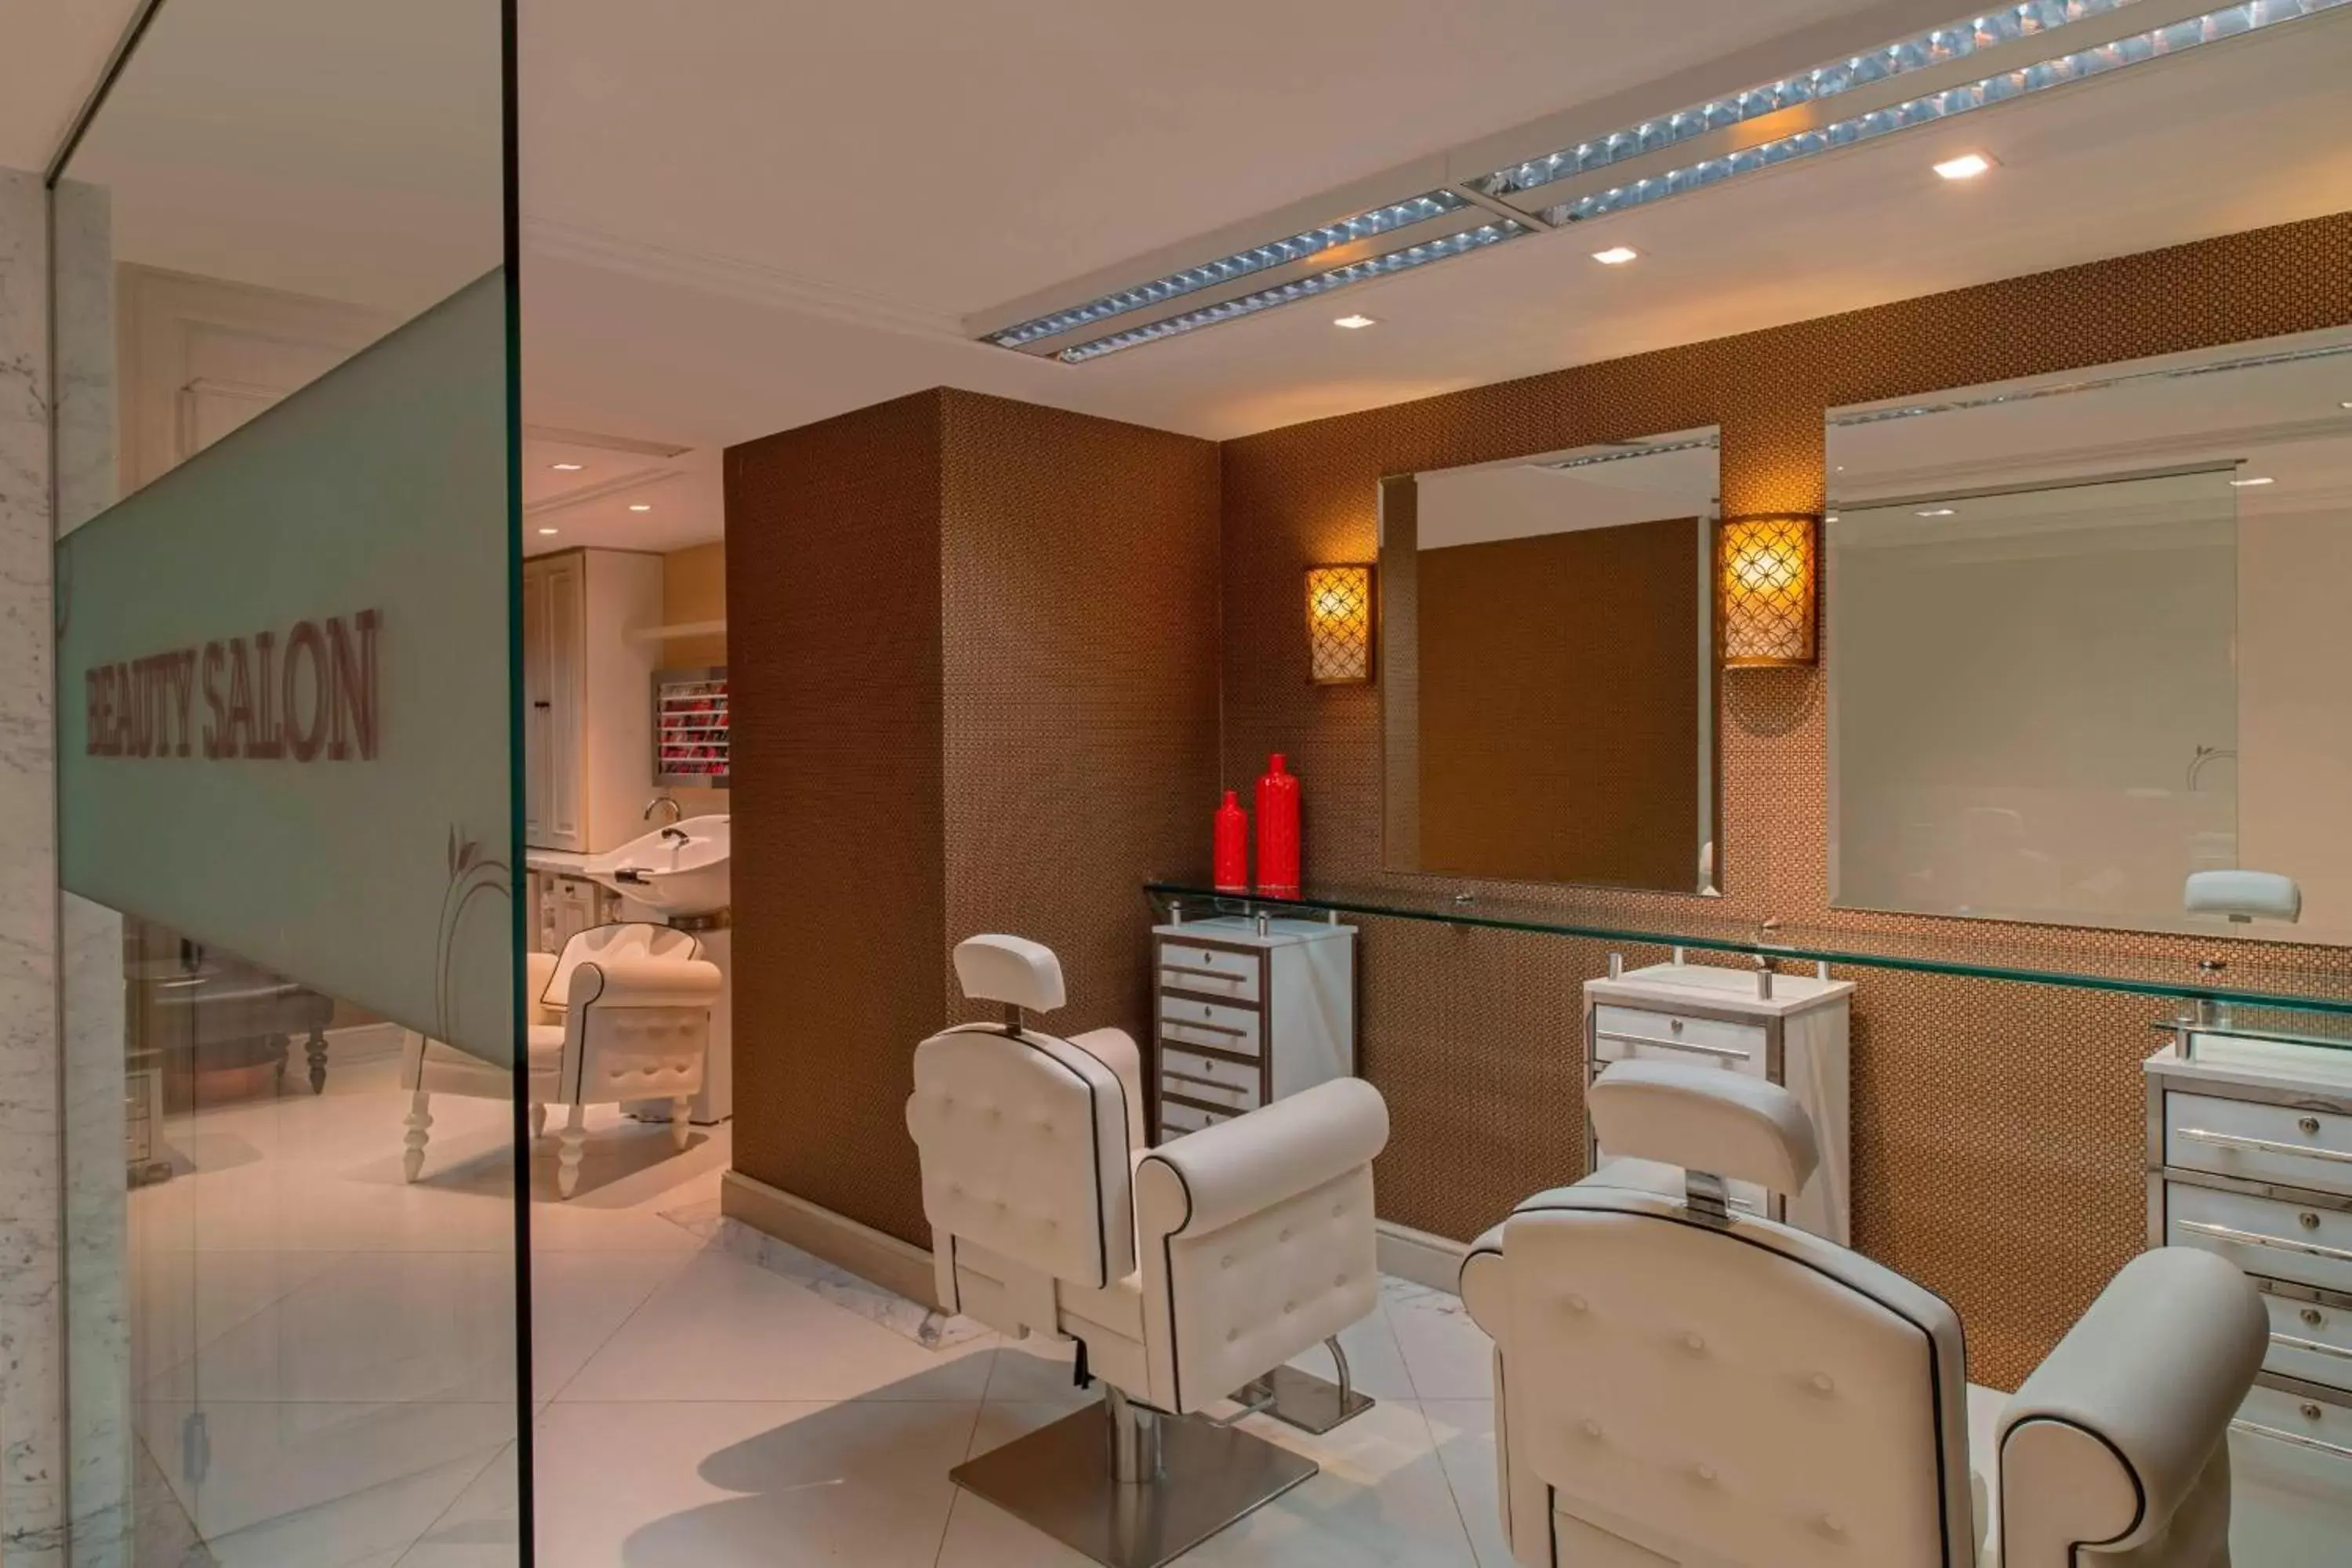 Spa and wellness centre/facilities, Bathroom in Sheraton Grand Rio Hotel & Resort